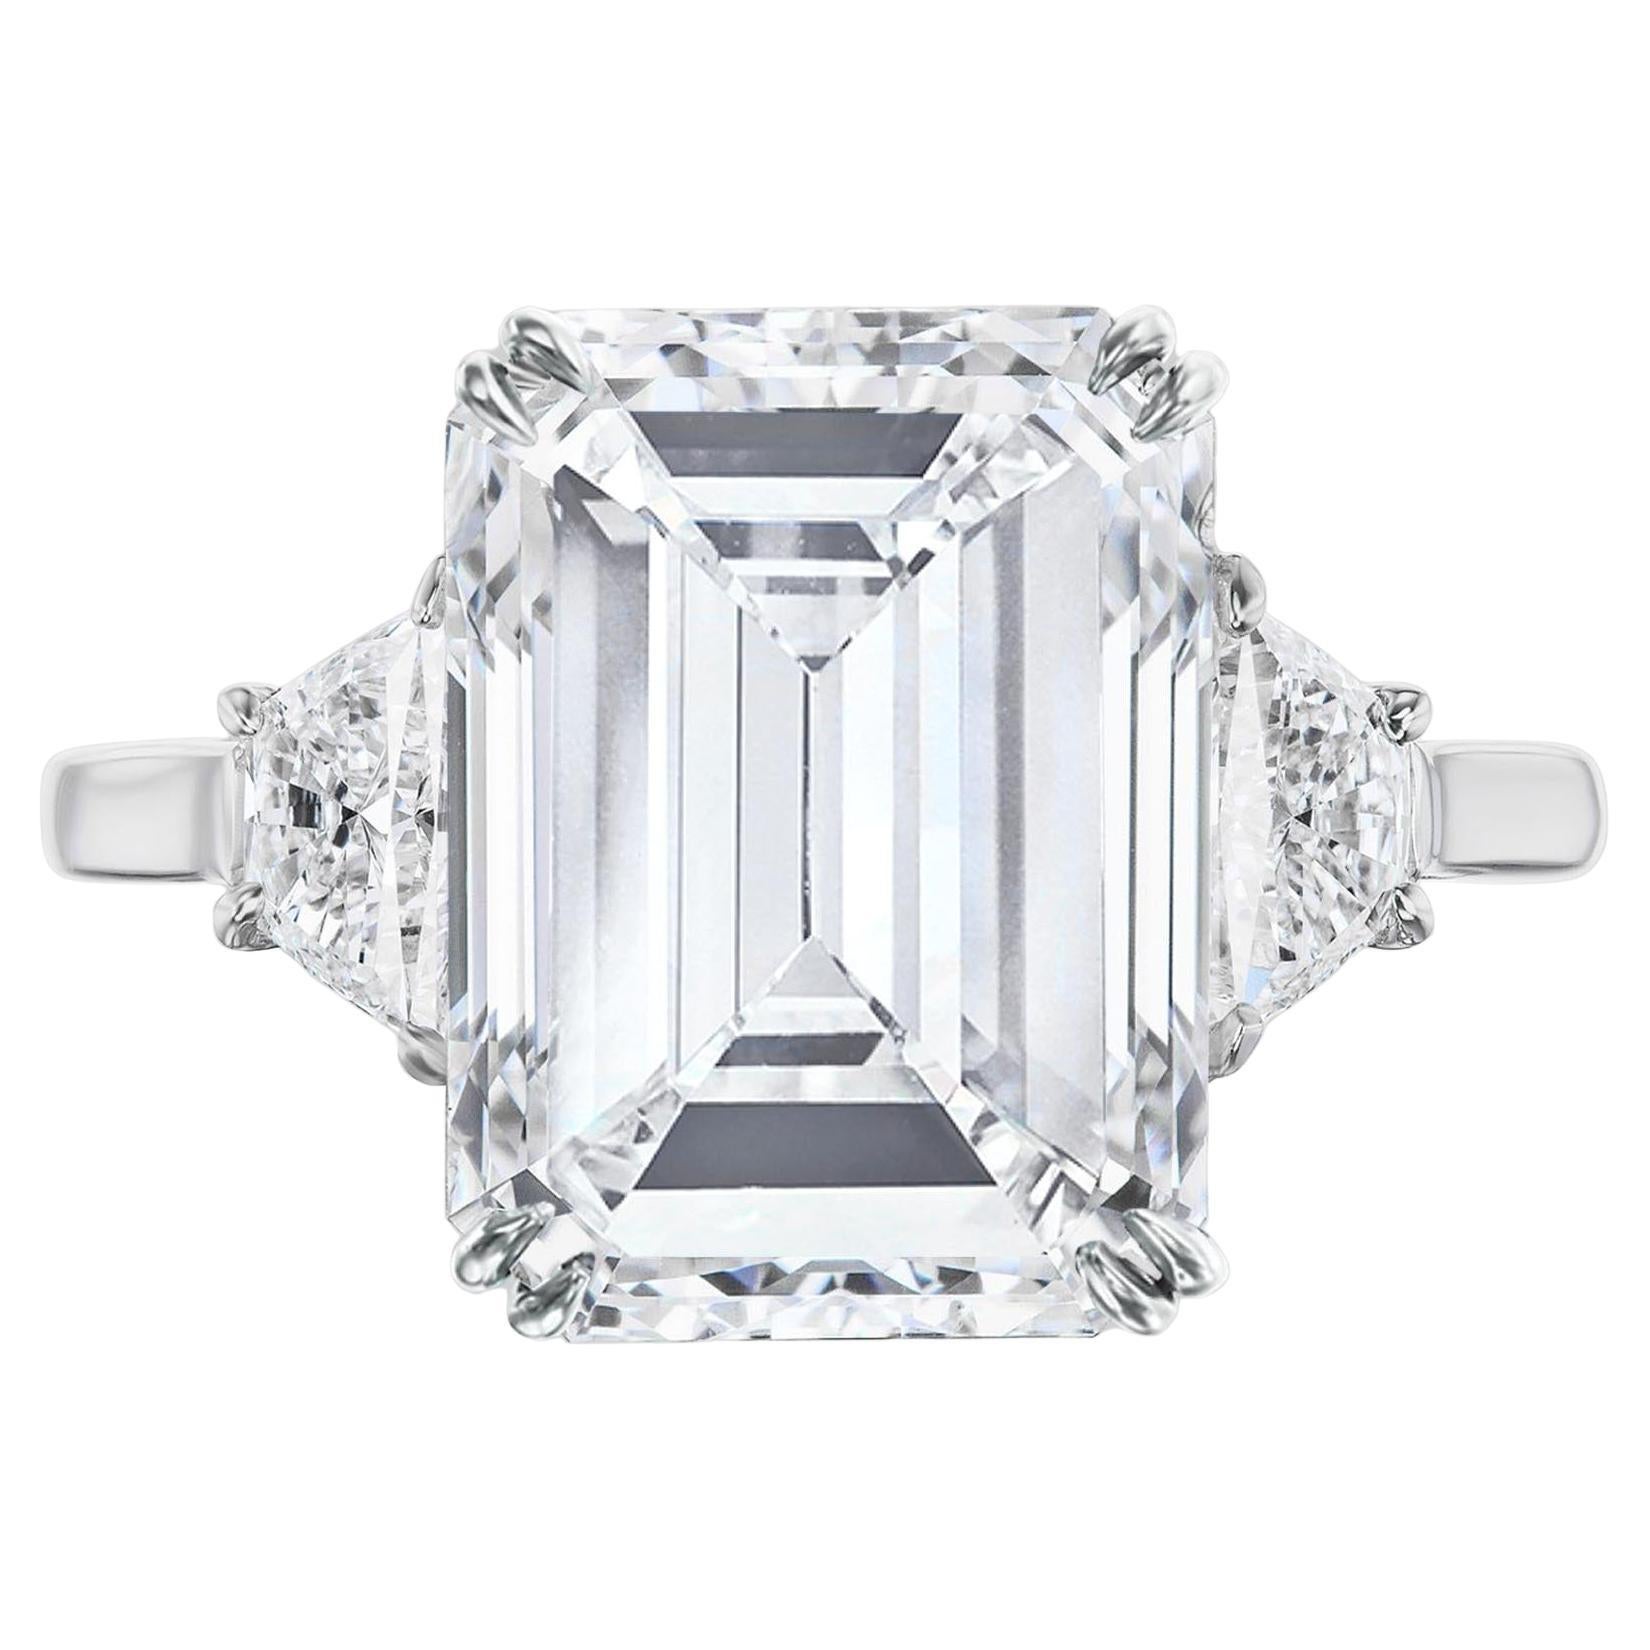 Bague sans défaut certifiée GIA avec diamant taille émeraude de 6 carats, proportions idéales